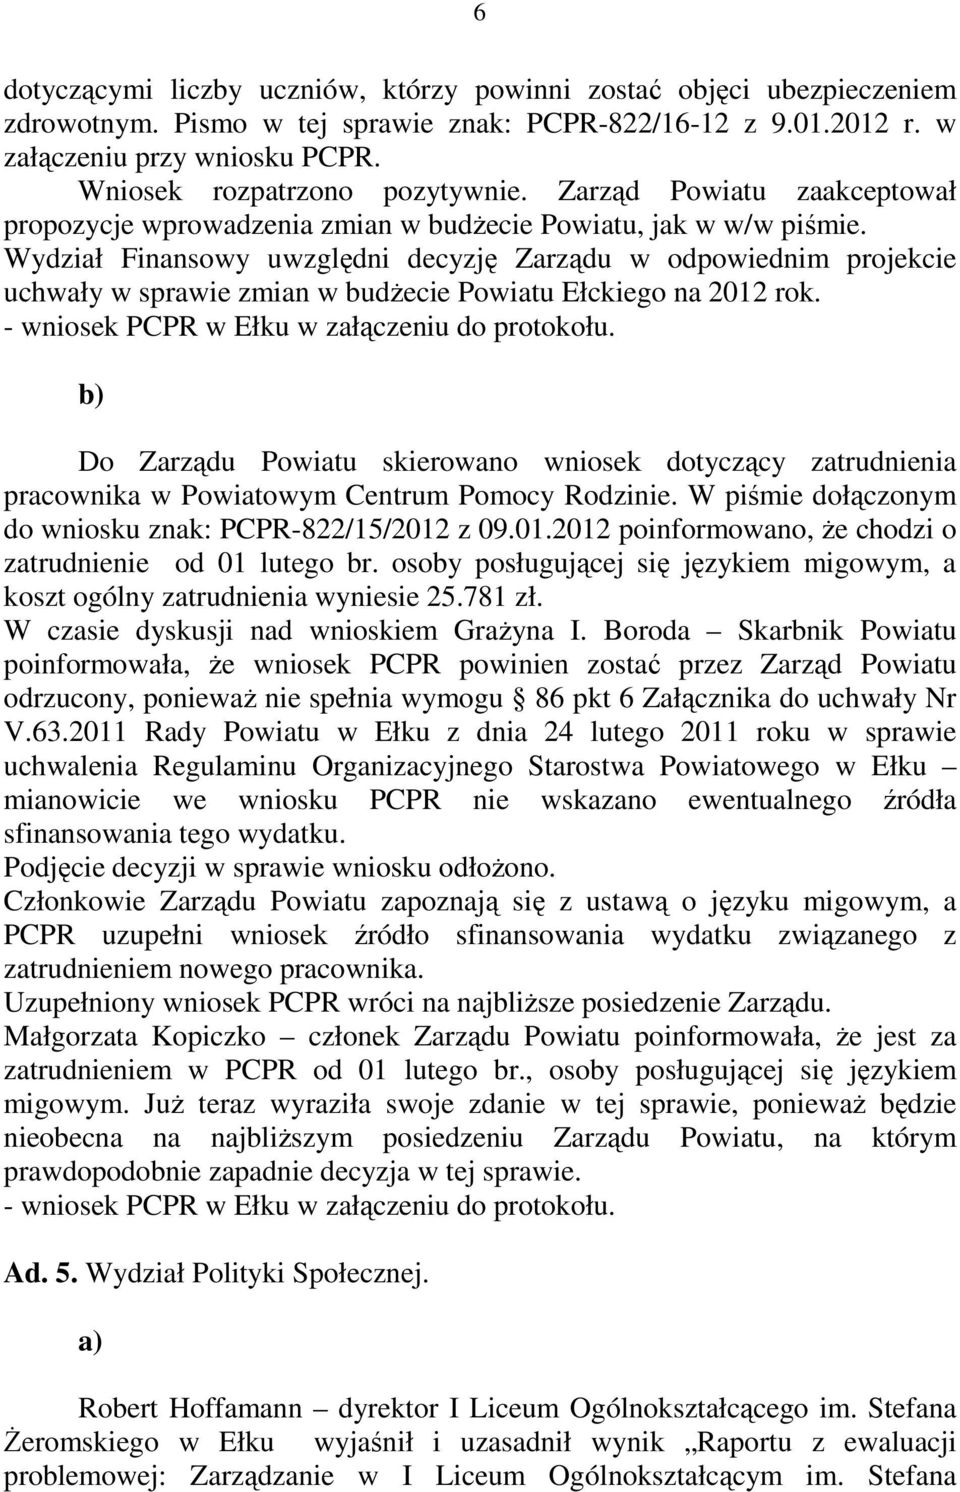 Wydział Finansowy uwzględni decyzję Zarządu w odpowiednim projekcie uchwały w sprawie zmian w budżecie Powiatu Ełckiego na 2012 rok. - wniosek PCPR w Ełku w załączeniu do protokołu.